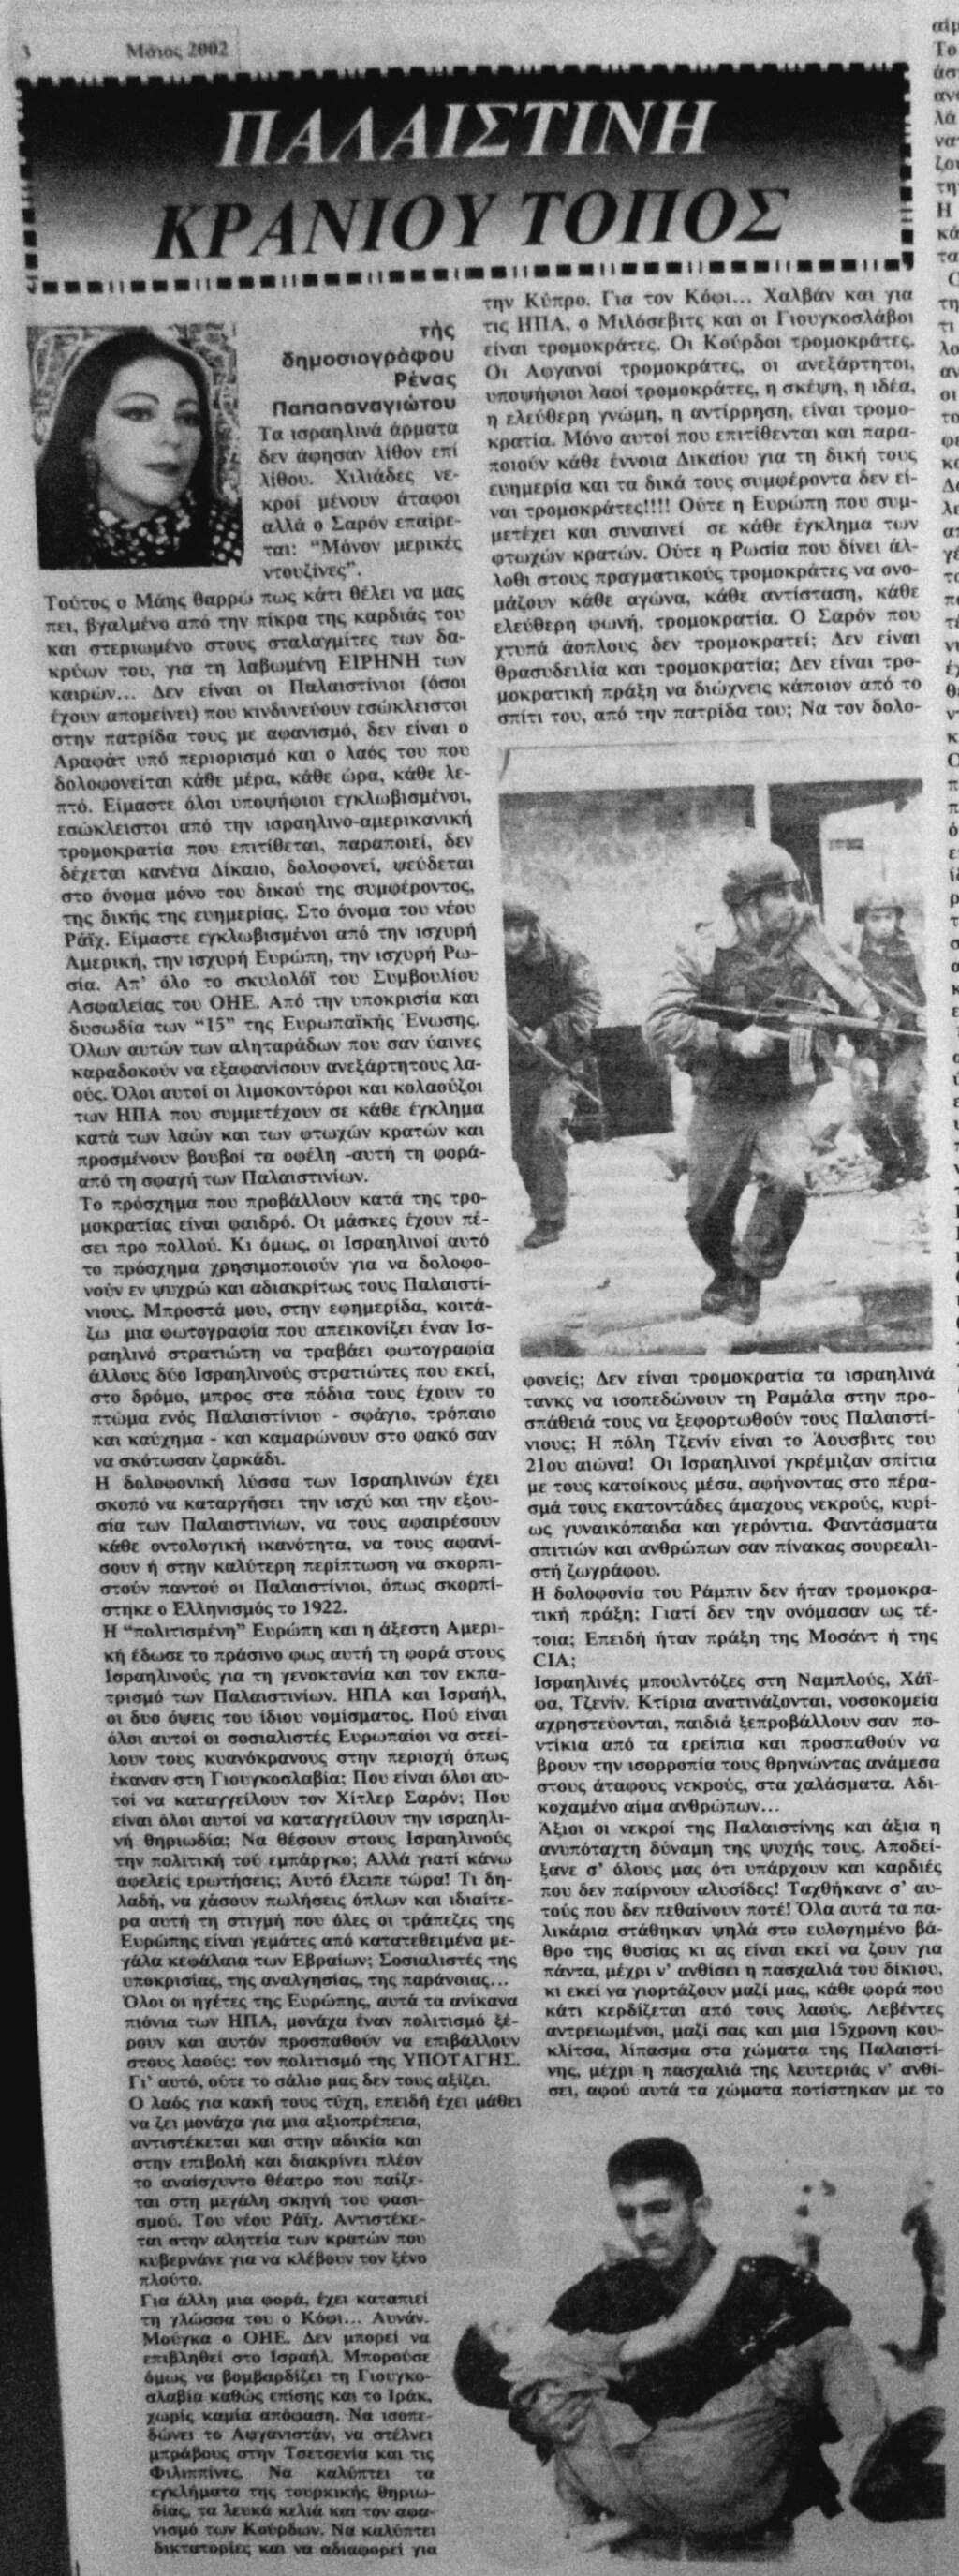 ΠΑΛΑΙΣΤΙΝΗ - ΚΡΑΝΙΟΥ ΤΟΠΟΣ - τής δημοσιογράφου Ρένας Παπαπαναγιώτου - Φύλλο 195 - Μάιος 2002 Eei_ei13